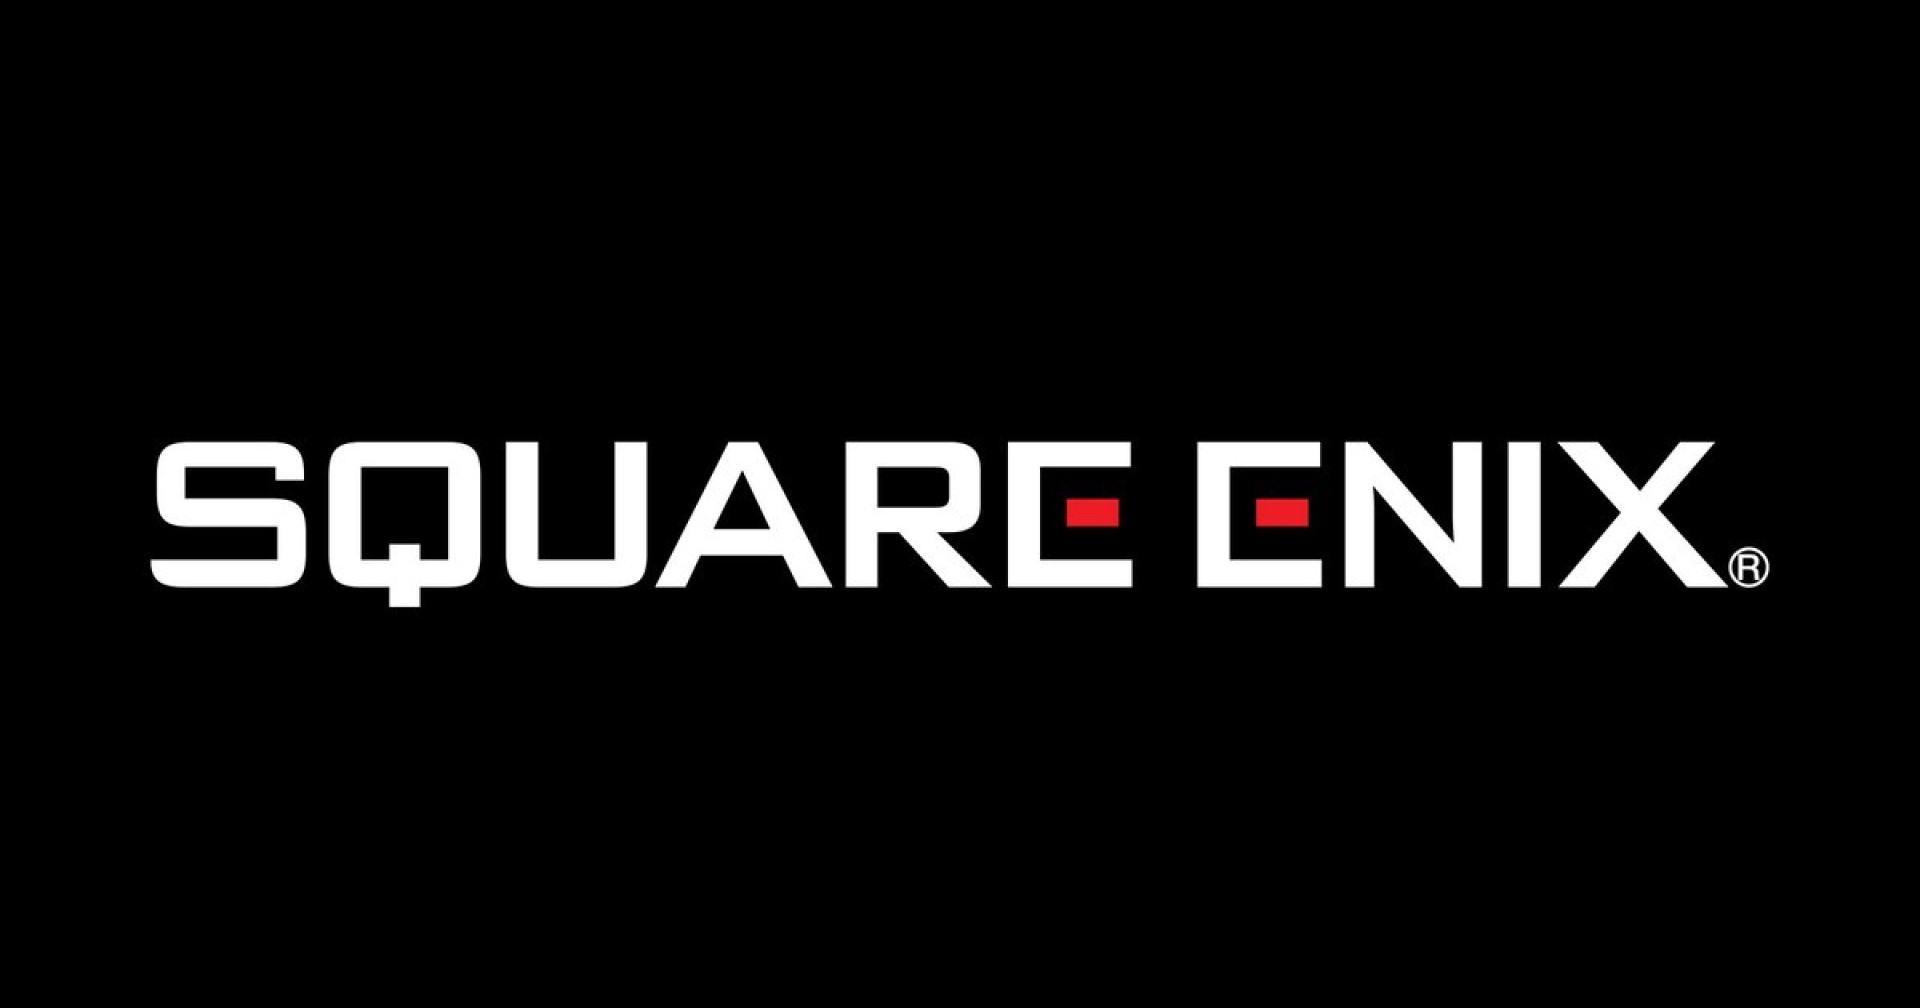 Square Enix เล็งสร้าง-ซื้อสตูดิโอเกมใหม่ หลังจากเทขายสตูดิโอเกมตะวันตกไป